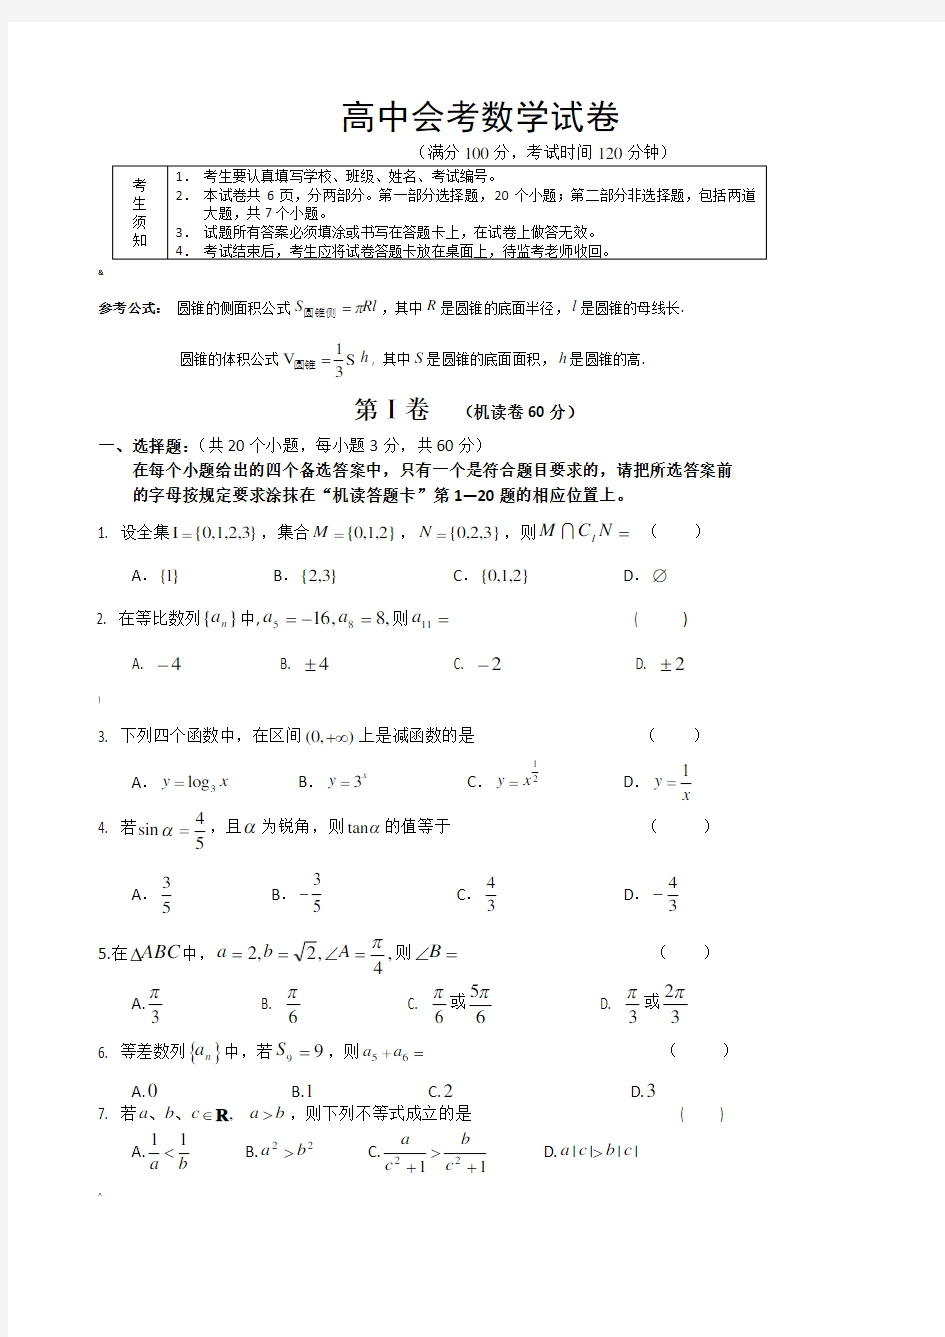 高中会考数学试卷(标准的)